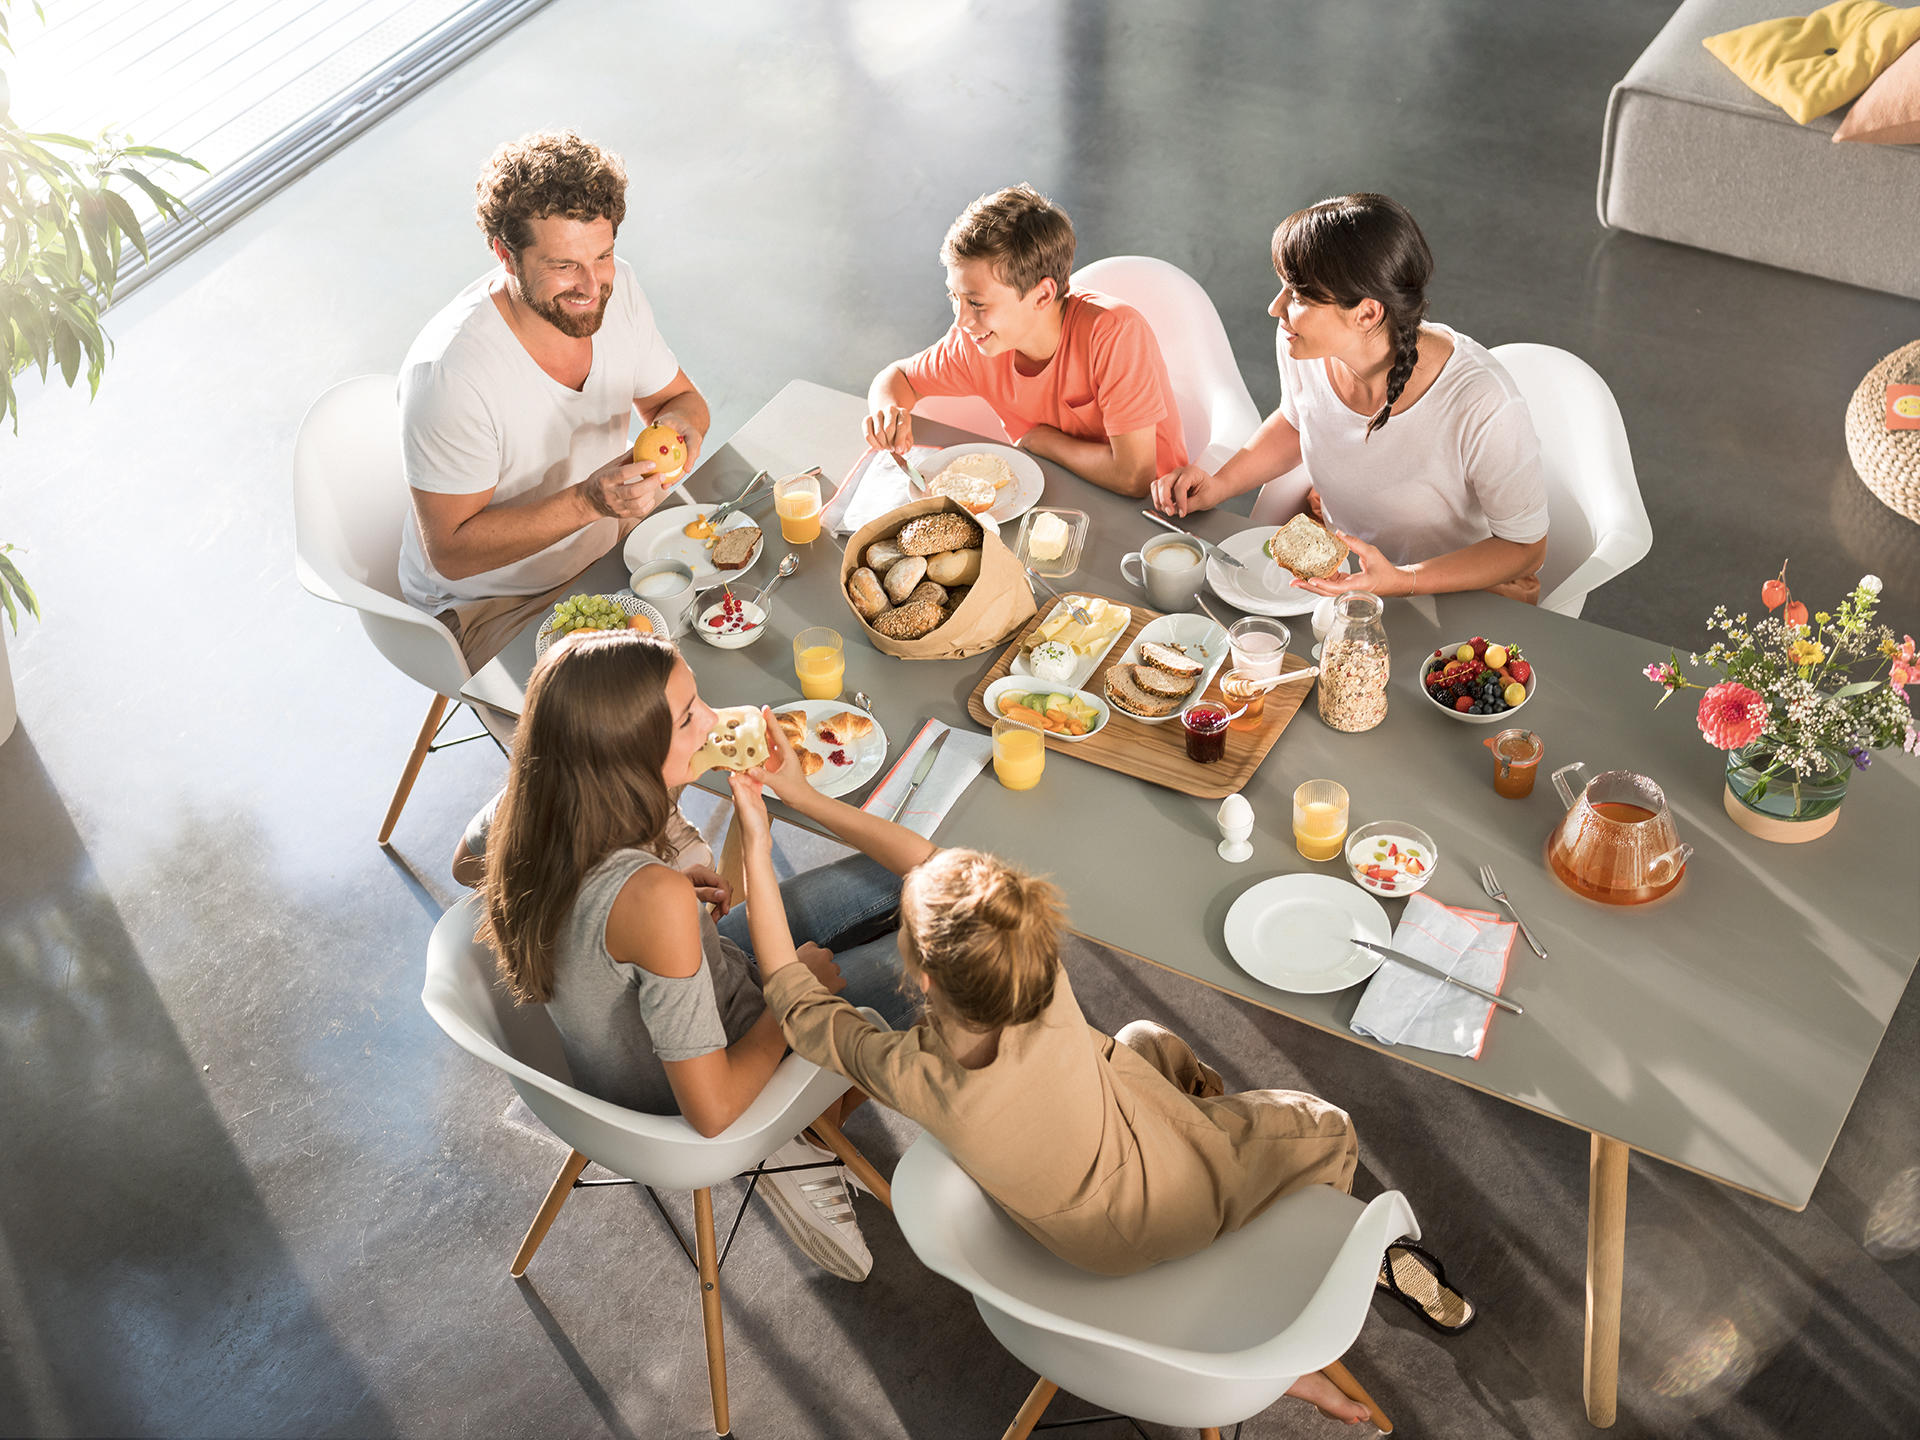 Morgengold Frühstückdienste ist Ihr Brötchenlieferservice in Flensburg, Eckernförde, Harrislee, Schleswig , Wanderup und Umgebung. Wir liefern Ihnen frische Brötchen direkt an die Haustüre - auch an Sonntagen und Feiertagen. 

Frühstück bestellen, Frühstü